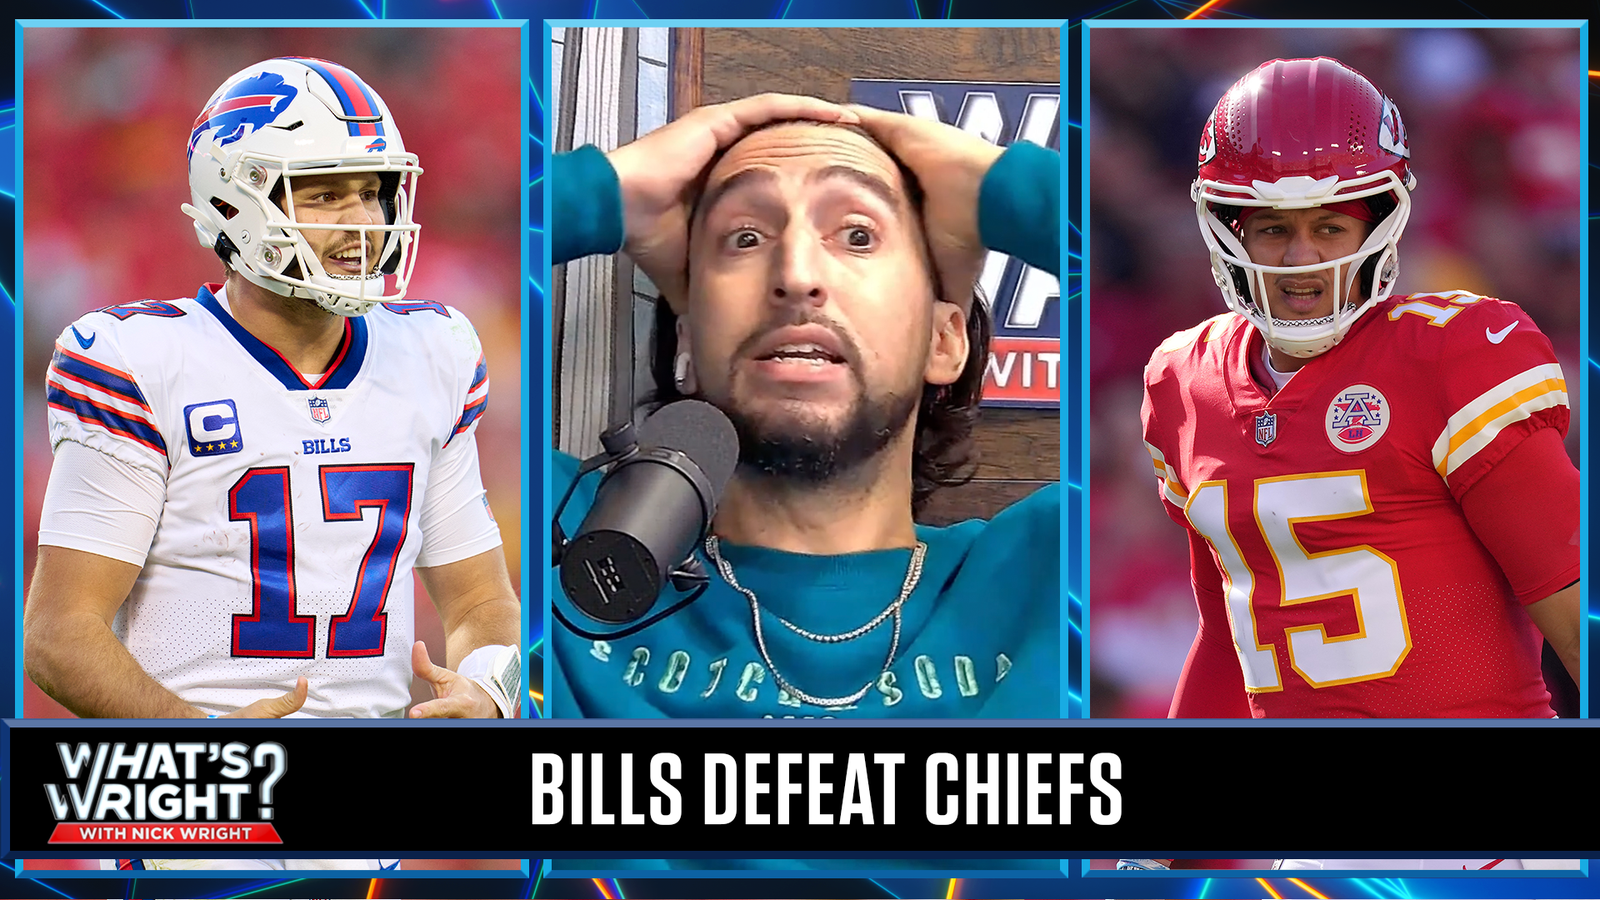 Nick partage certaines inquiétudes après la défaite de ses Chiefs lors de la semaine 6 contre Bills